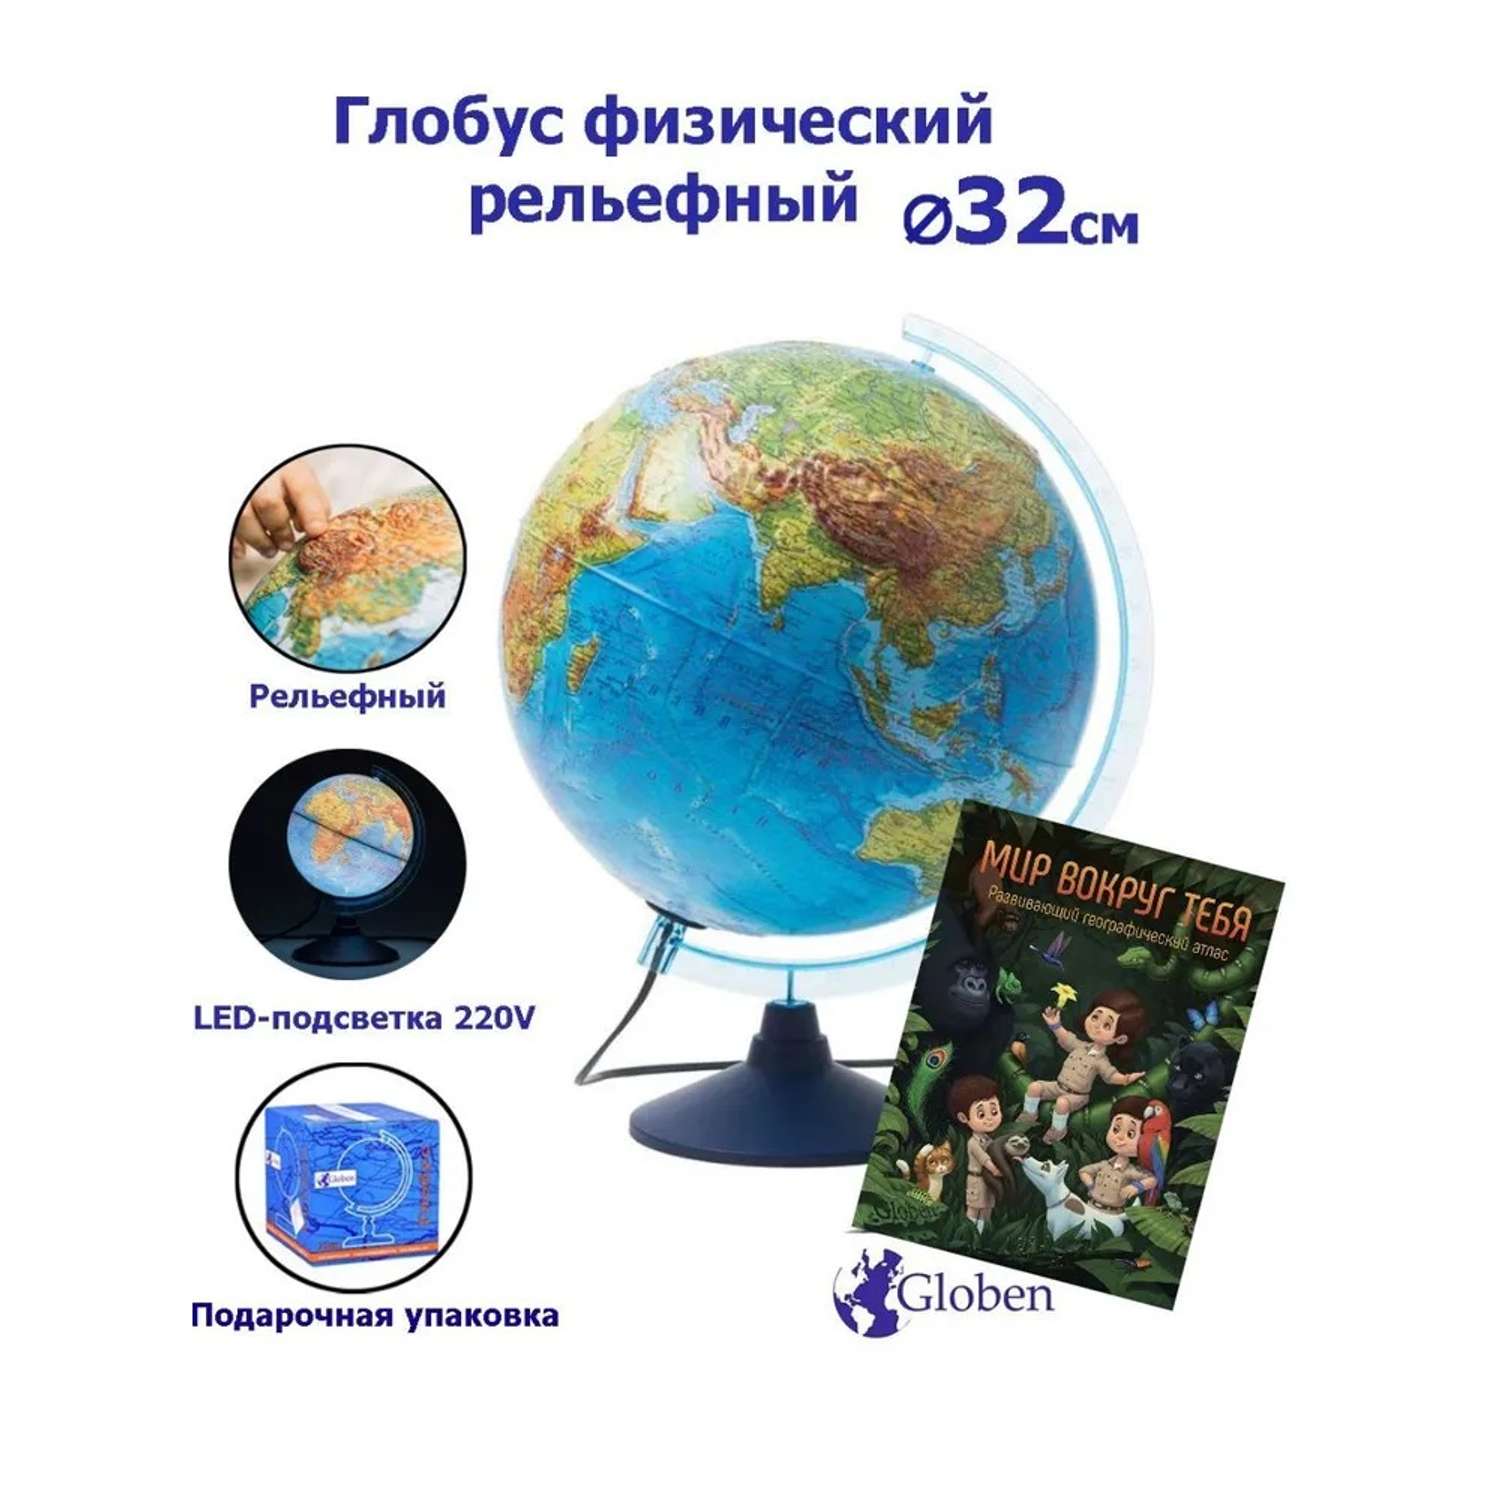 Глобус Globen Земли физический рельефный с LED-подсветкой 32 см + Развивающий атлас Мир вокруг тебя - фото 1